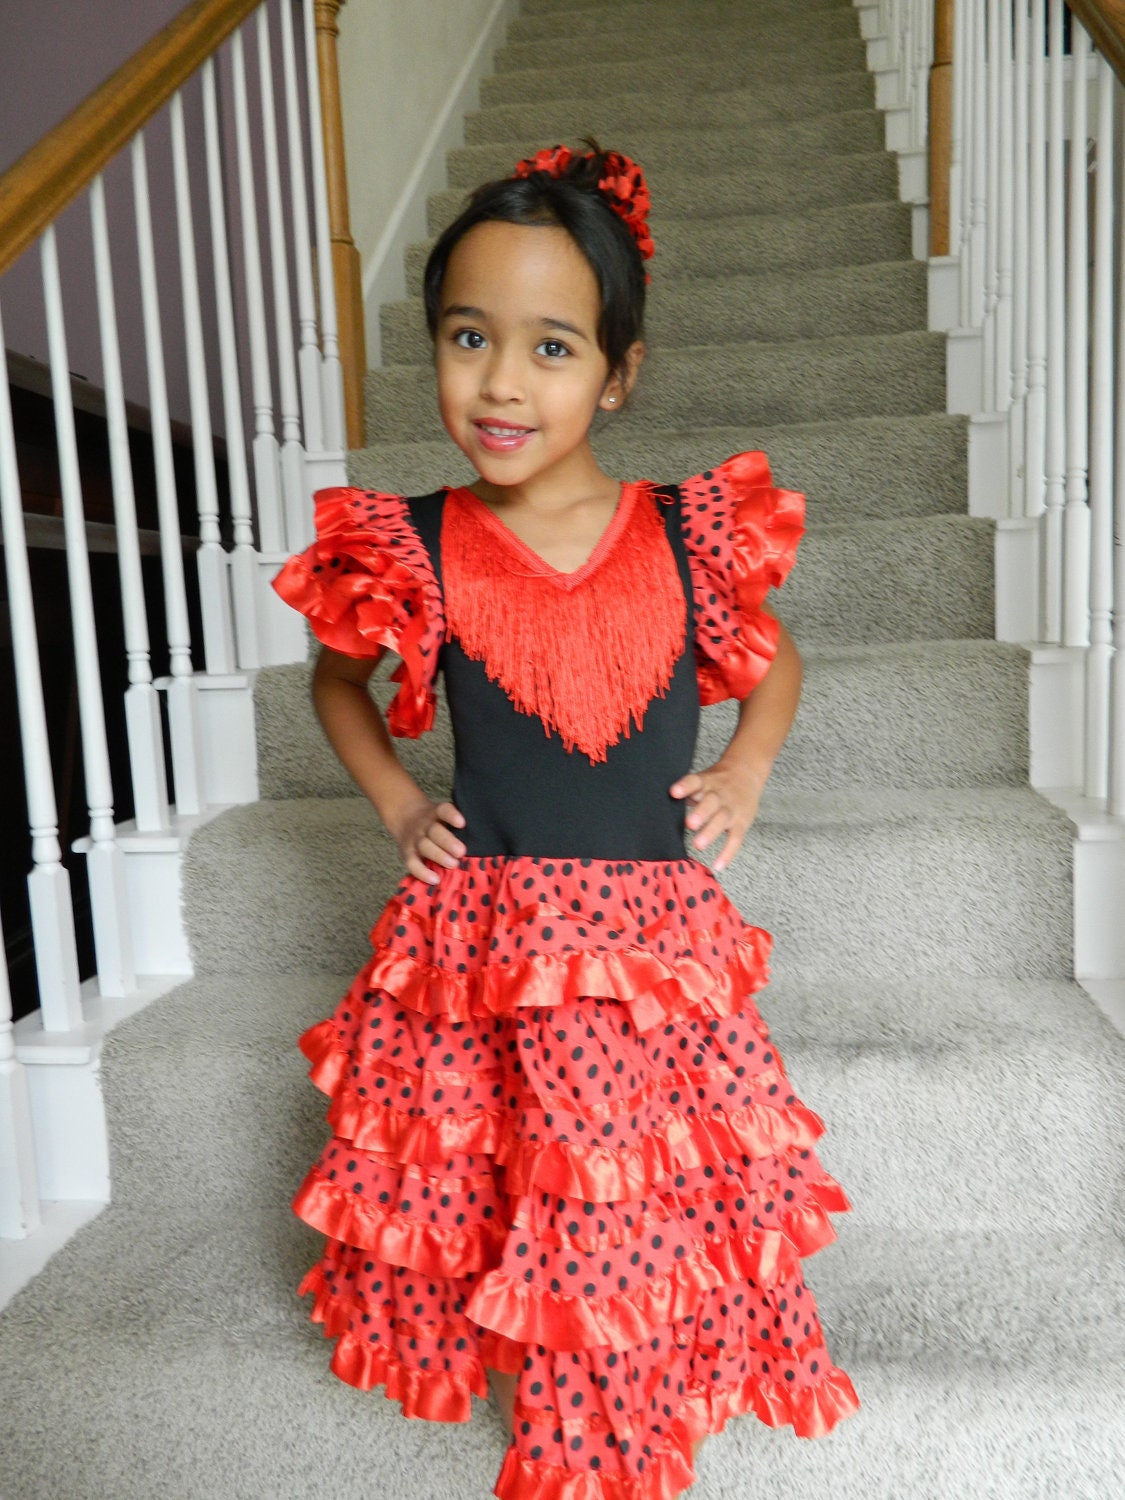 Spanish / Flamenco Dancer Costume for Girls Sizes 2t -5